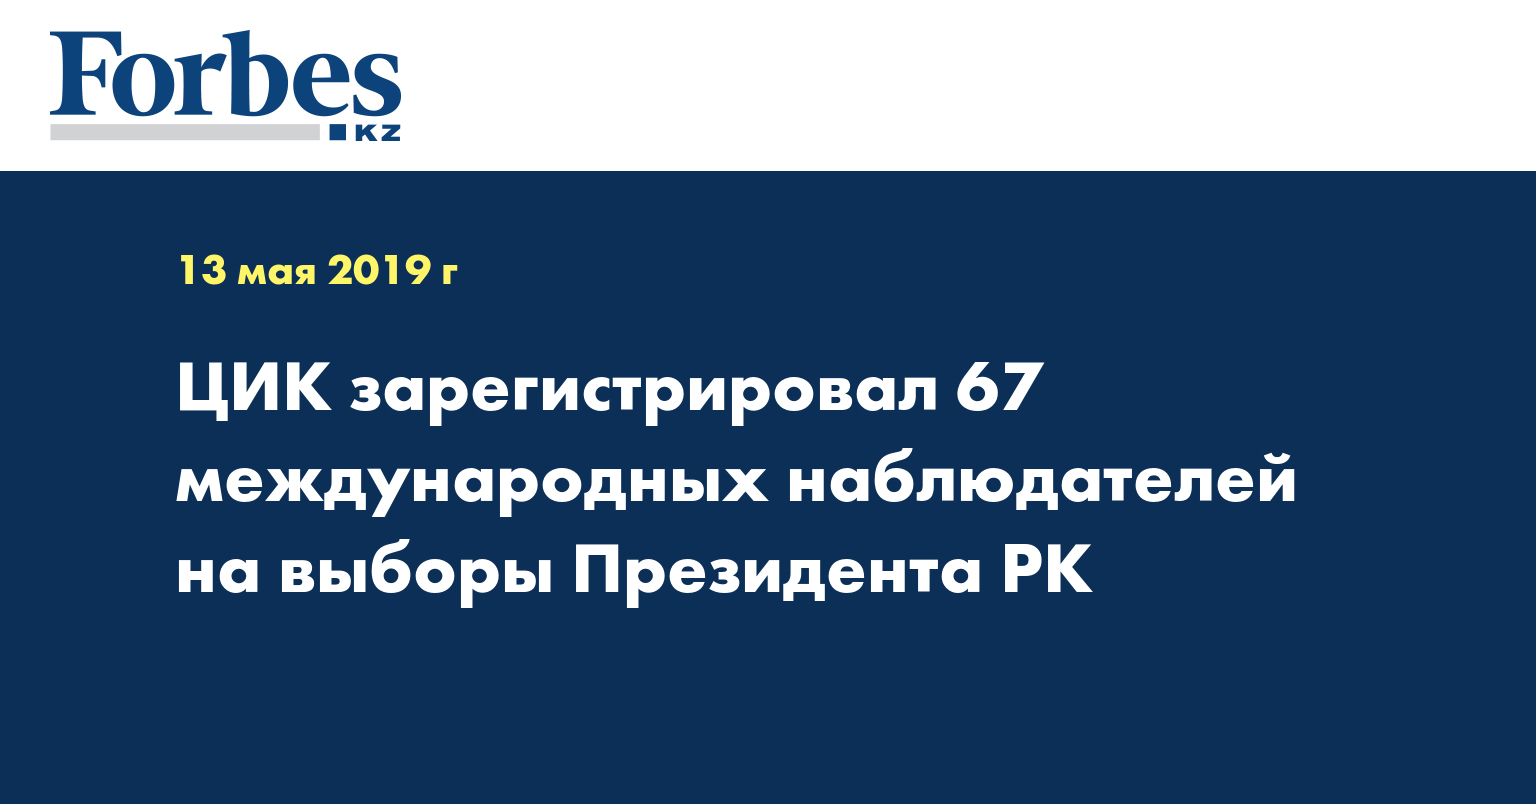 ЦИК зарегистрировал 67 международных наблюдателей на выборы Президента РК